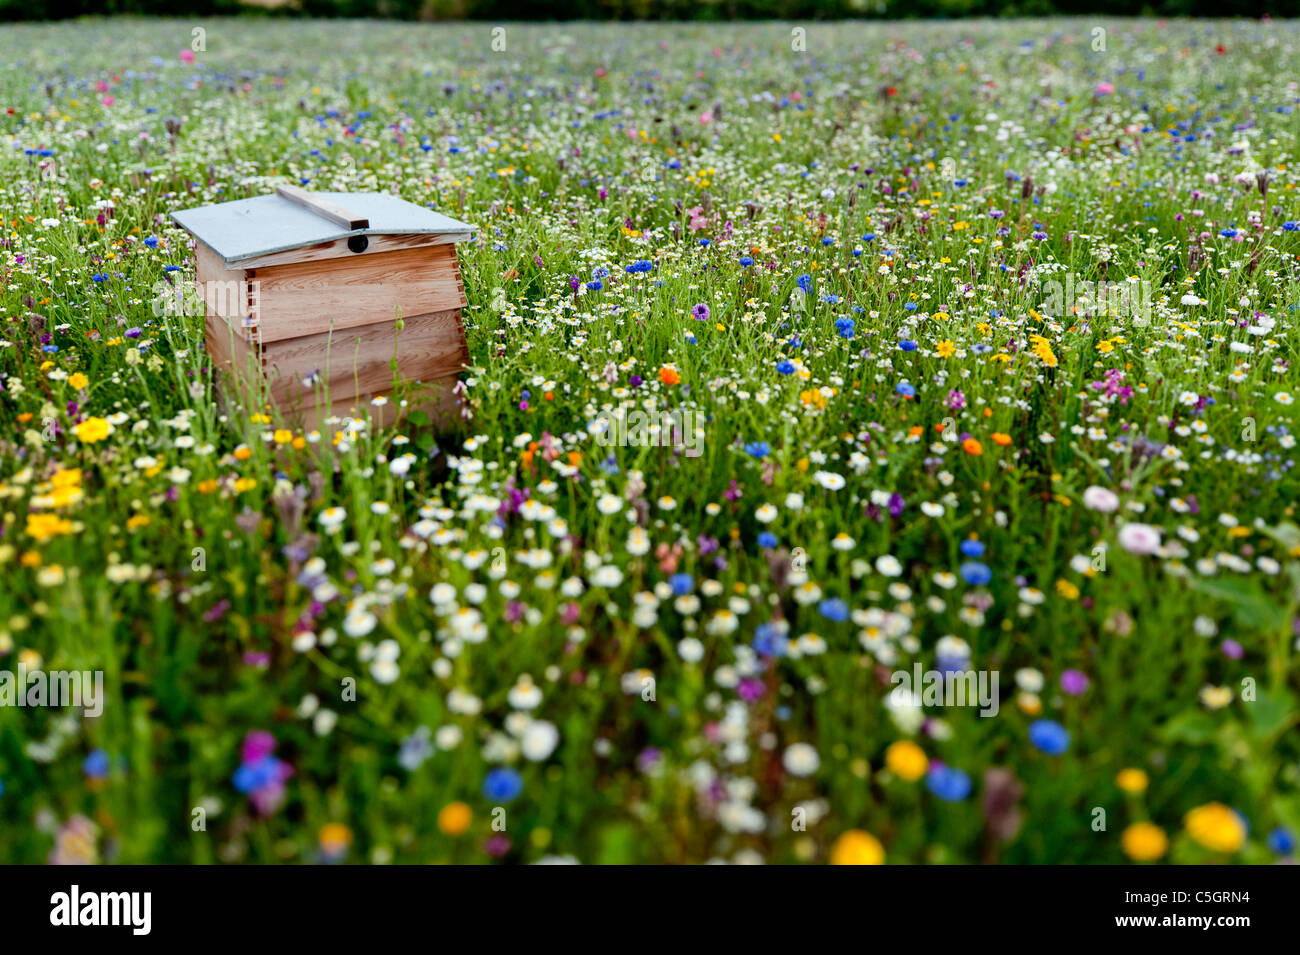 El Wildflower meadow. Colmena en un campo lleno de flores silvestres en un día de verano en inglés Foto de stock